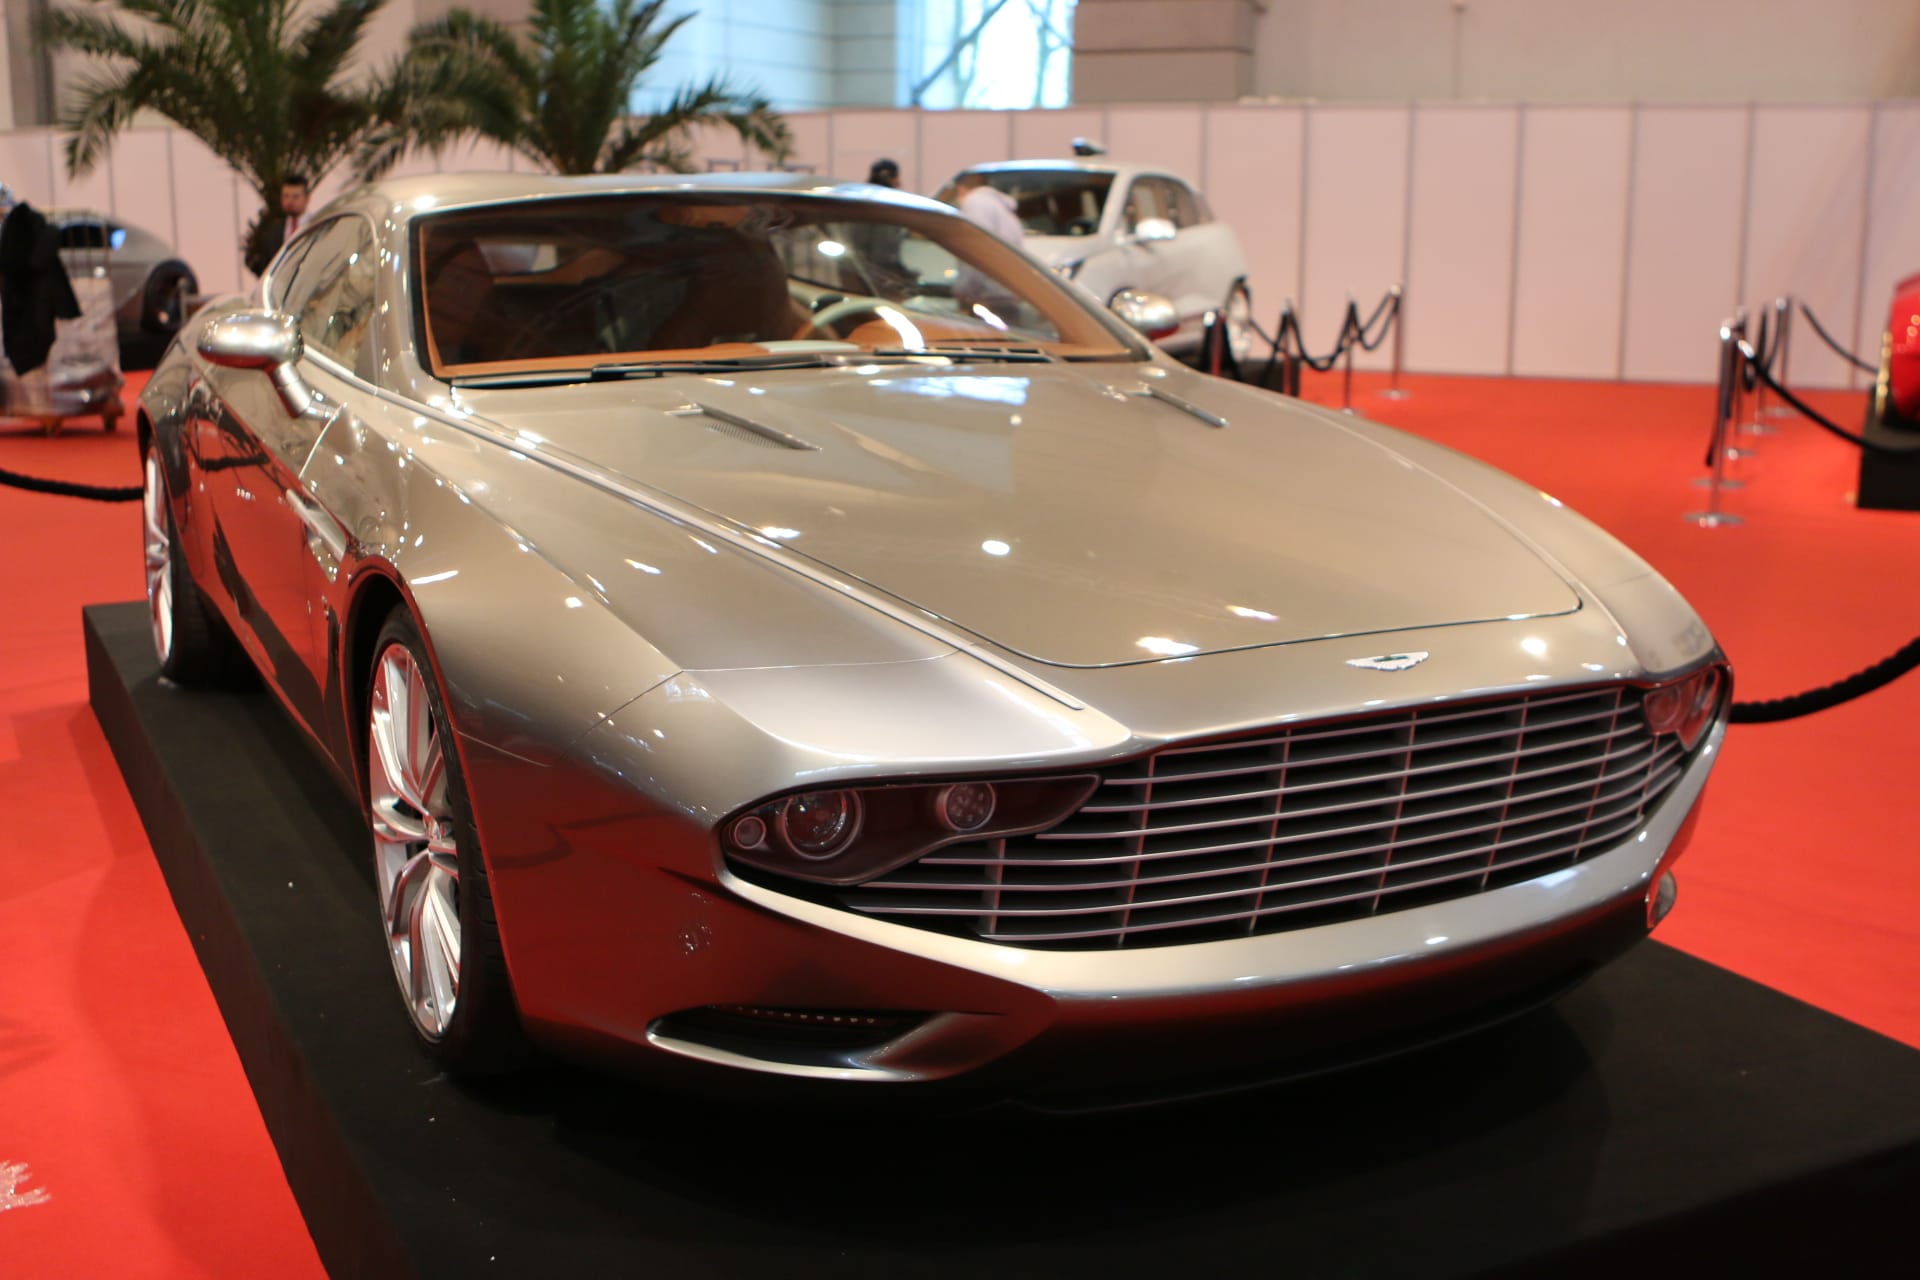 Zum 95. Geburtstag der Marke Aston Martin "schenkt" der Karosseriebauer Zagato das Modell Virage Shooting Brake Zagato.